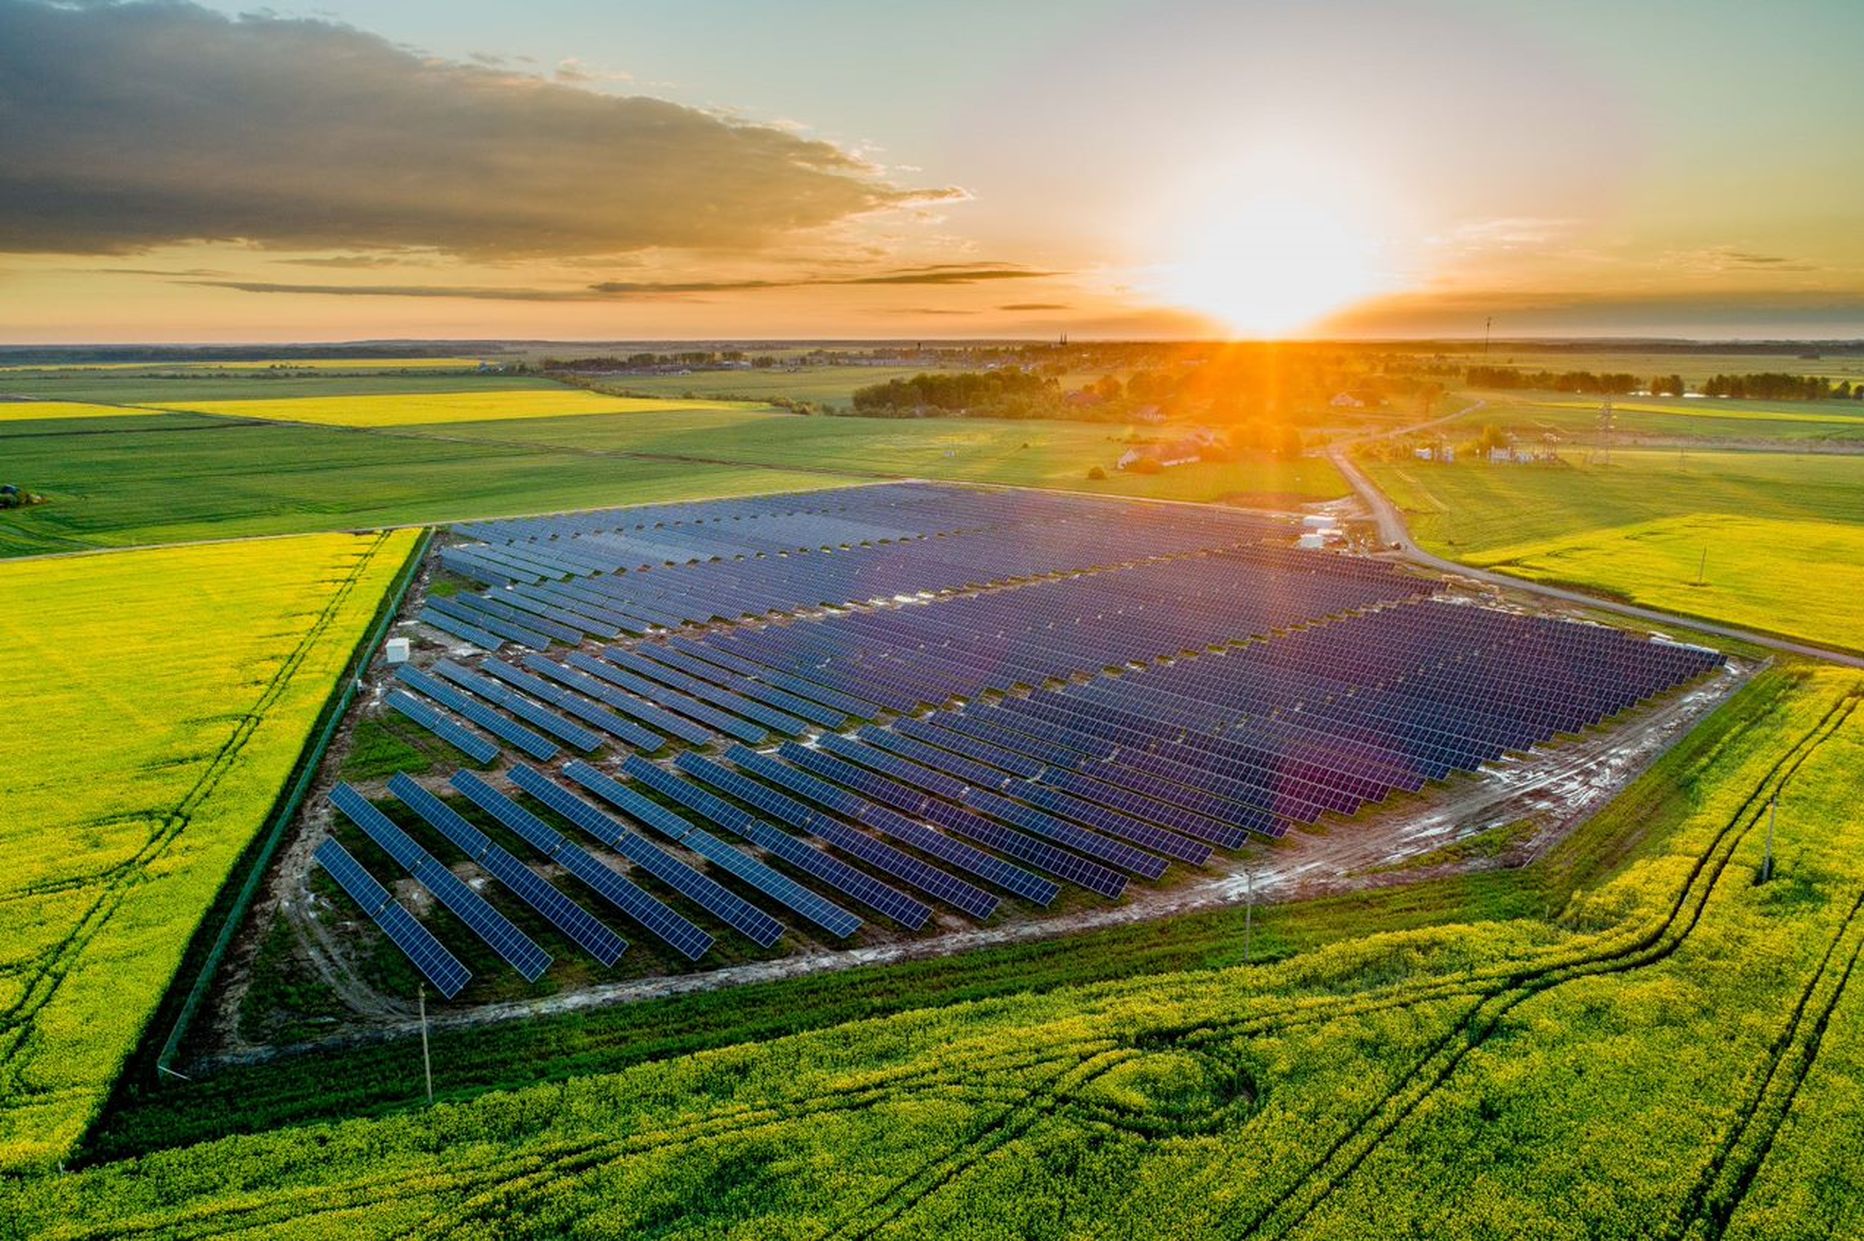 “Green Genius” izbūvētā saules elektrostacija Lietuvā